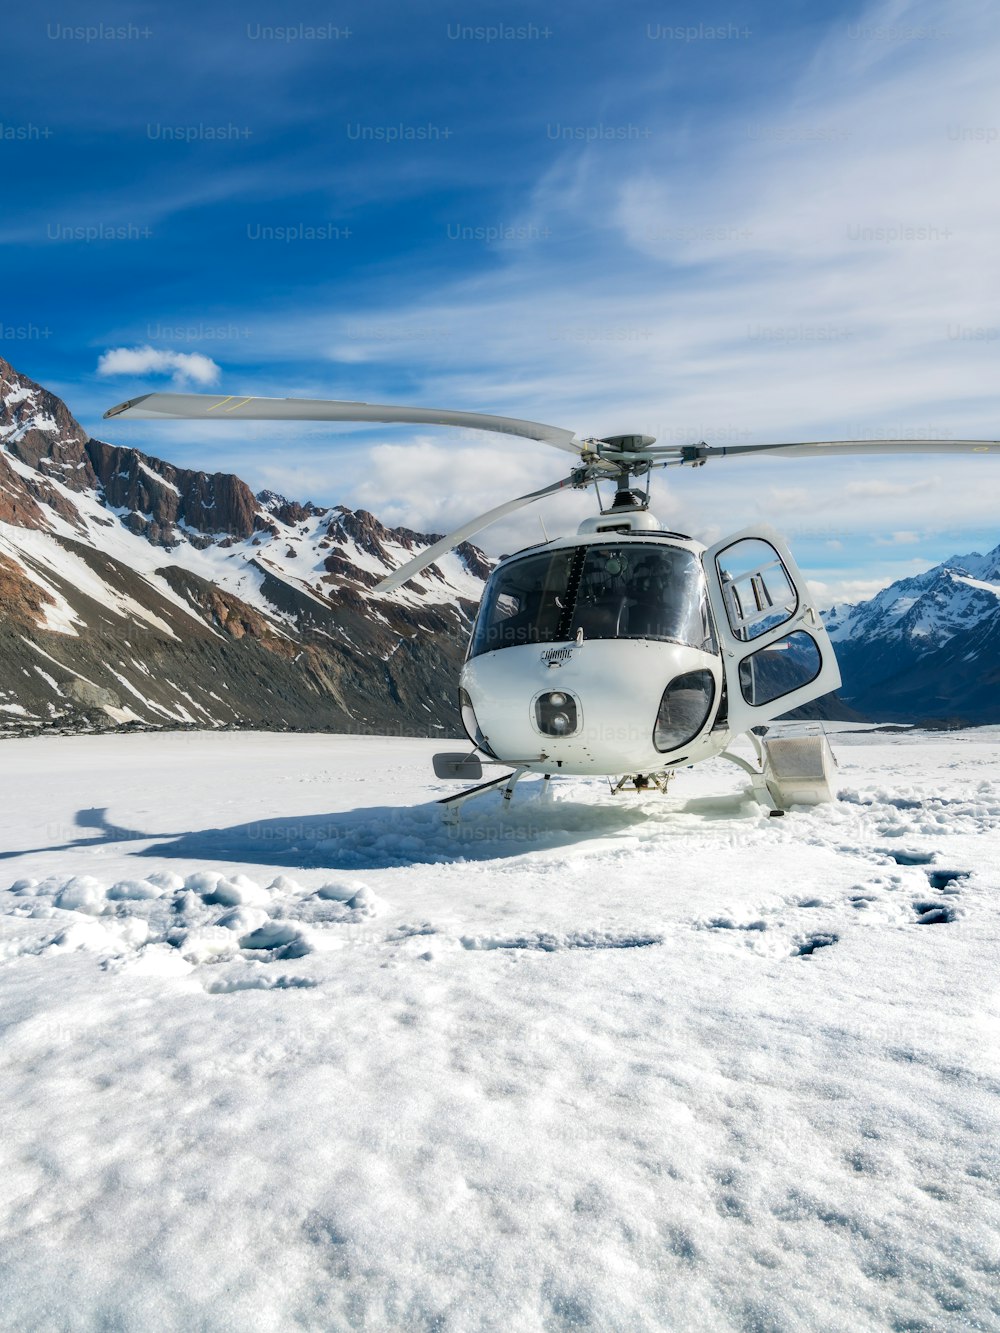 Hubschrauberlandung auf dem Schneeberg im Tasman-Gletscher in Mt Cook, Neuseeland. Der Hubschrauberdienst in Mt Cook bietet Rundflüge, Gletscherlandungen und Notfallrettung an.